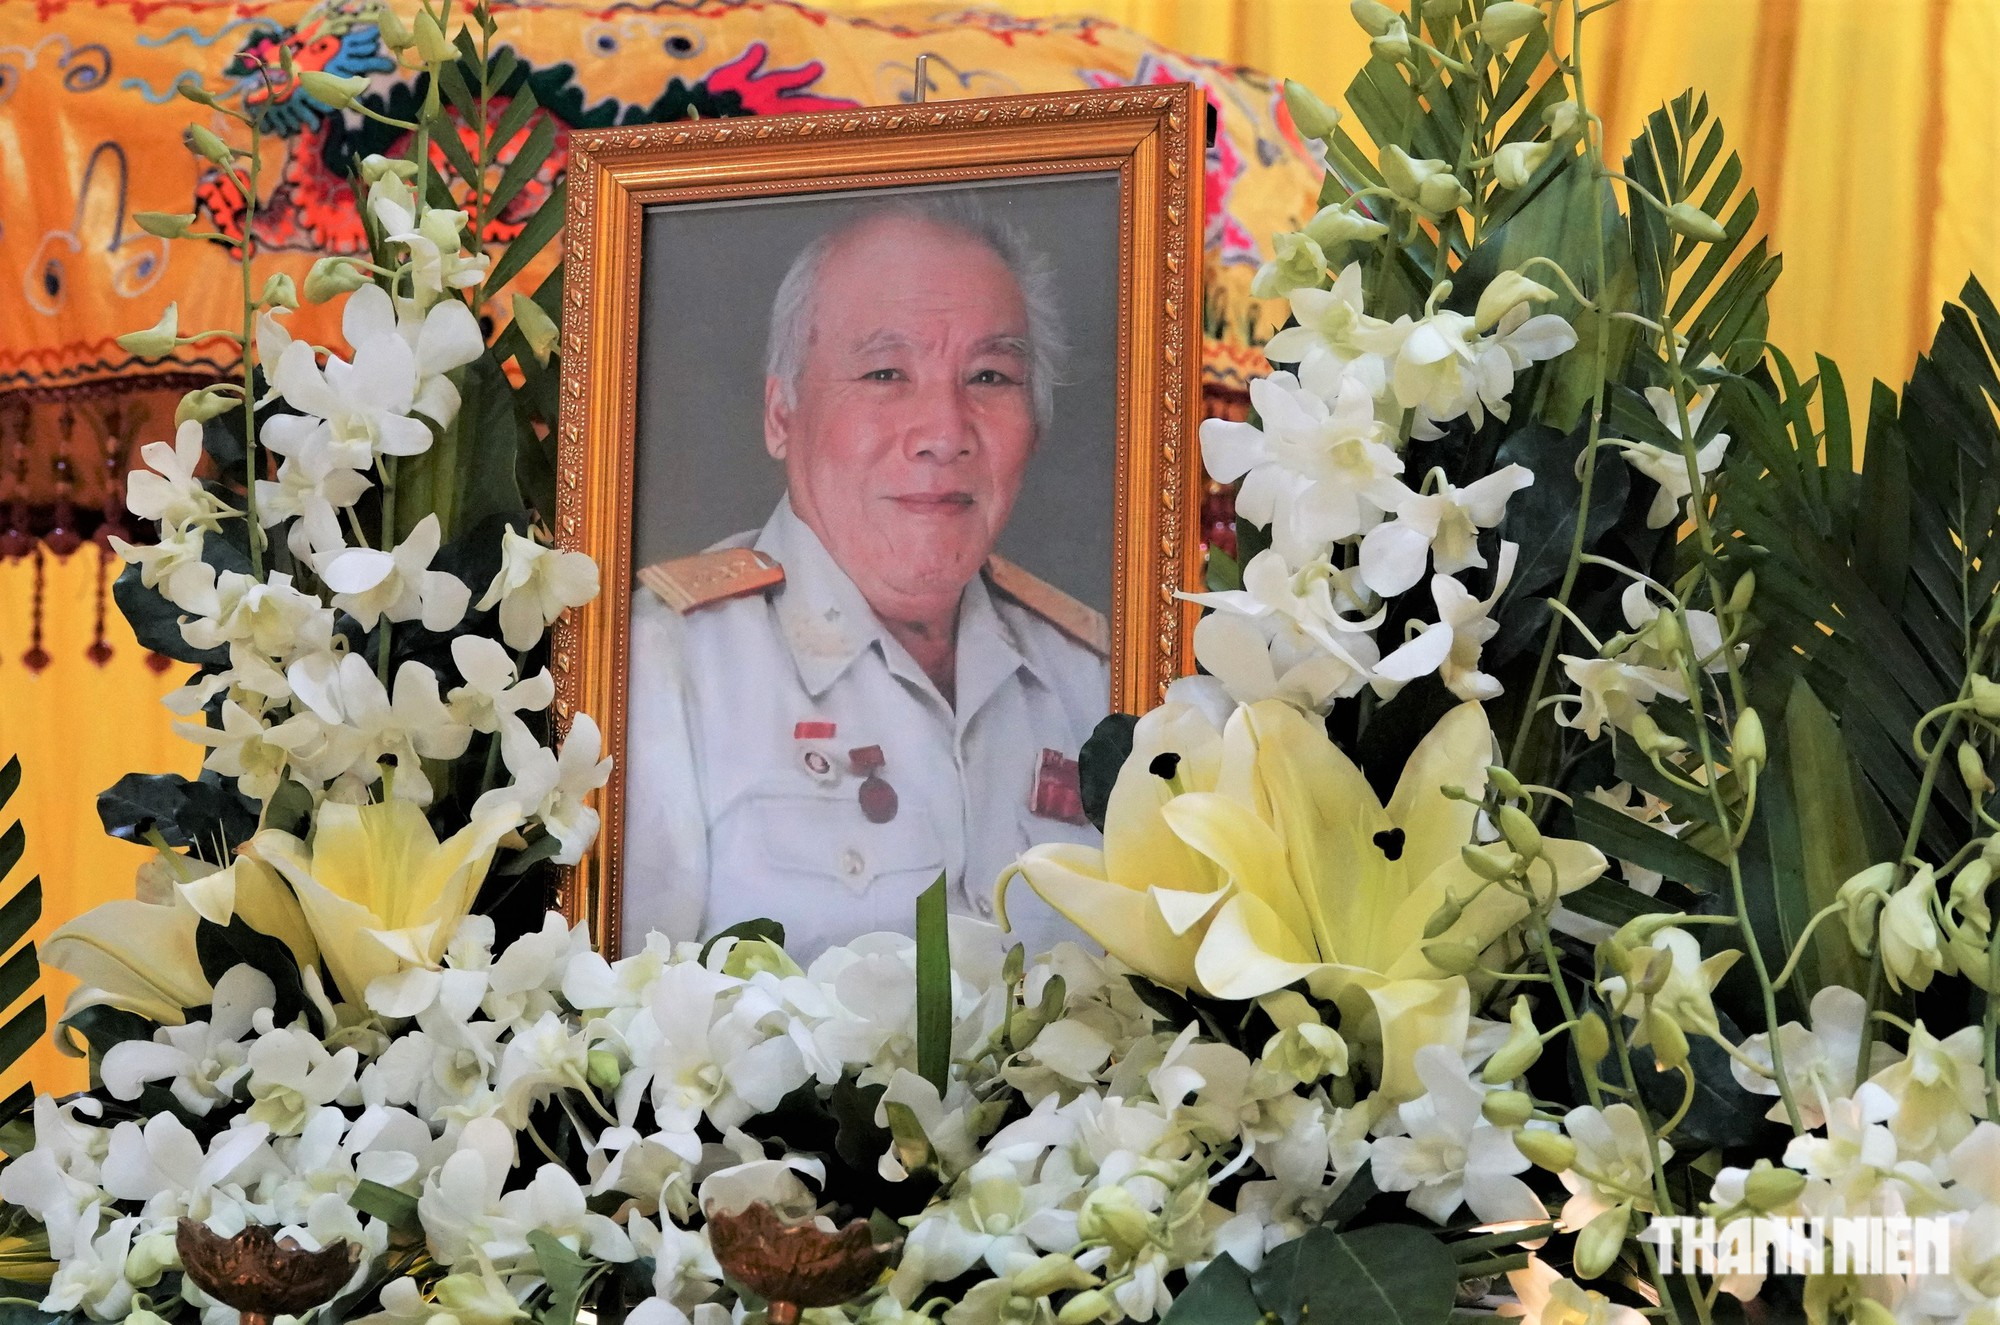 Đại tá Bùi Văn Tùng qua đời, tang lễ tổ chức tại nhà riêng - Ảnh 1.